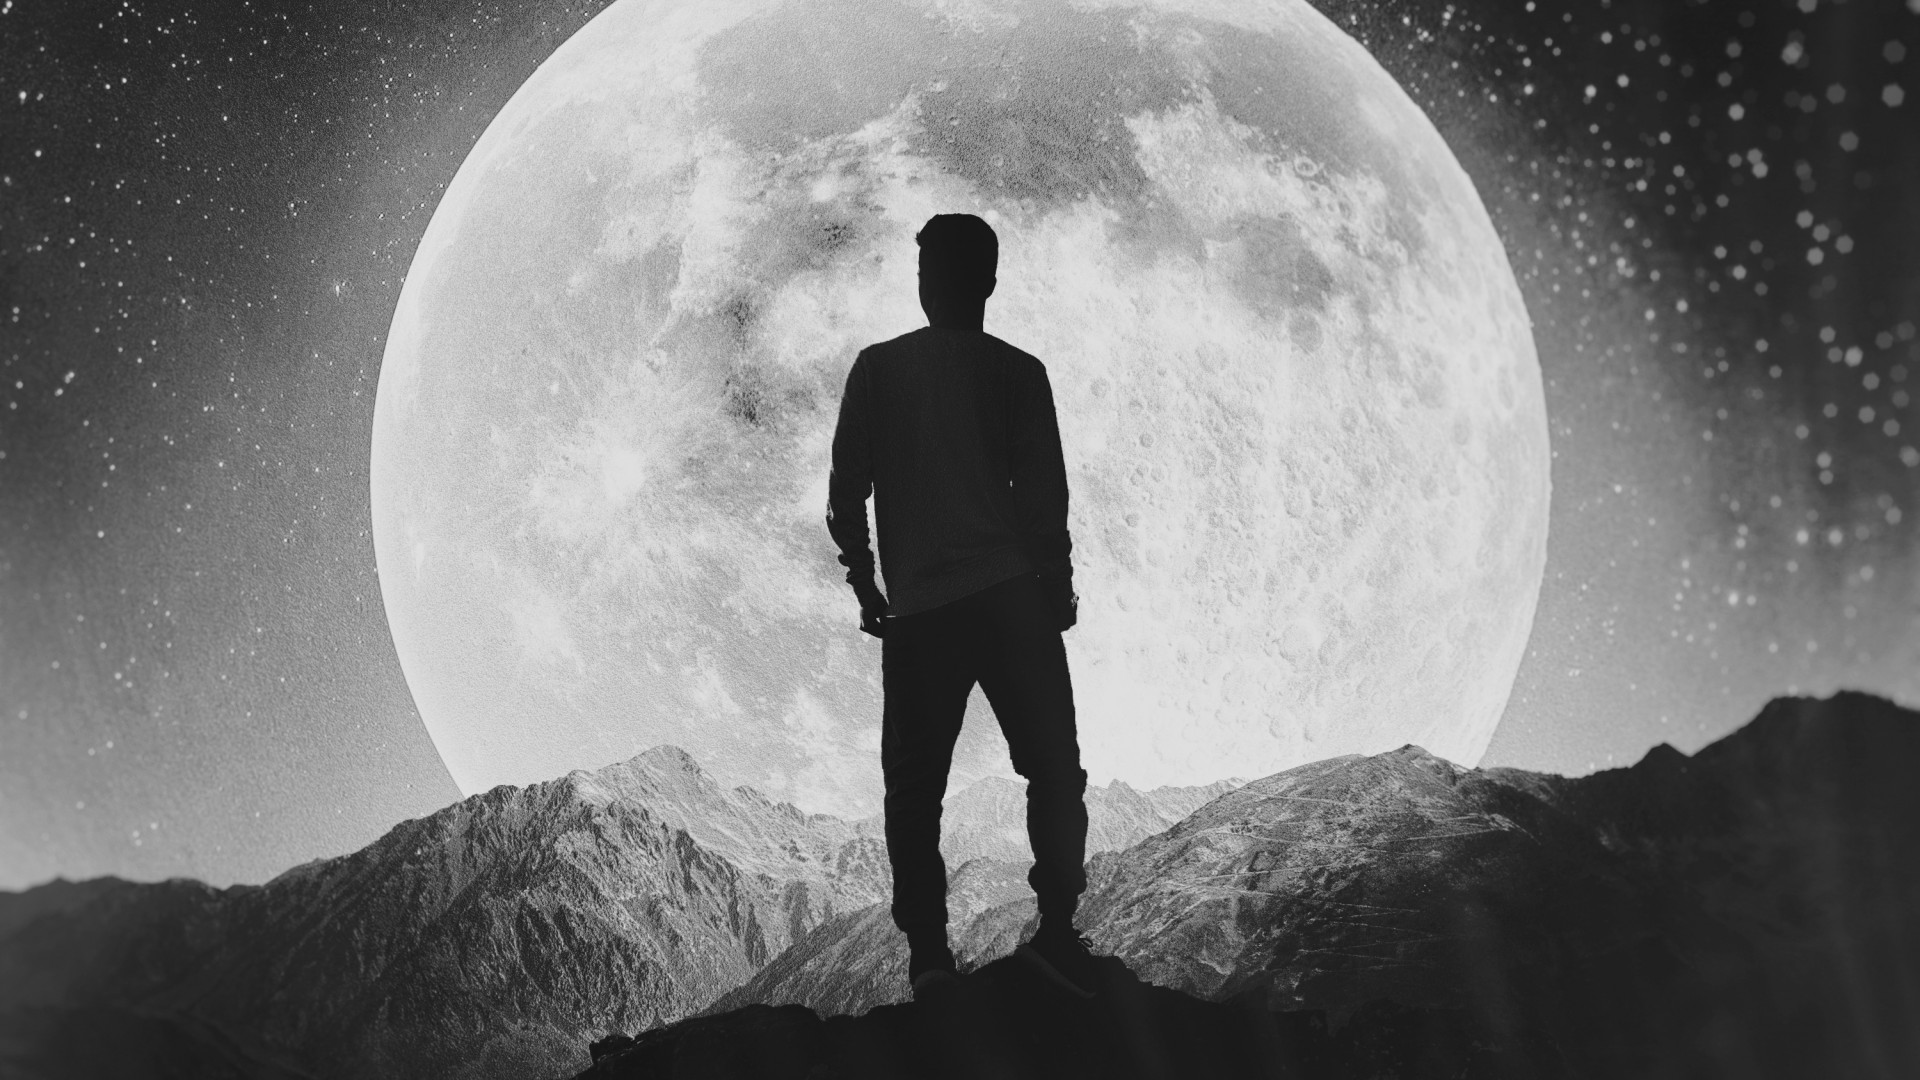 혼자 남자 벽지,사진,흑백 사진,하늘,검정색과 흰색,달